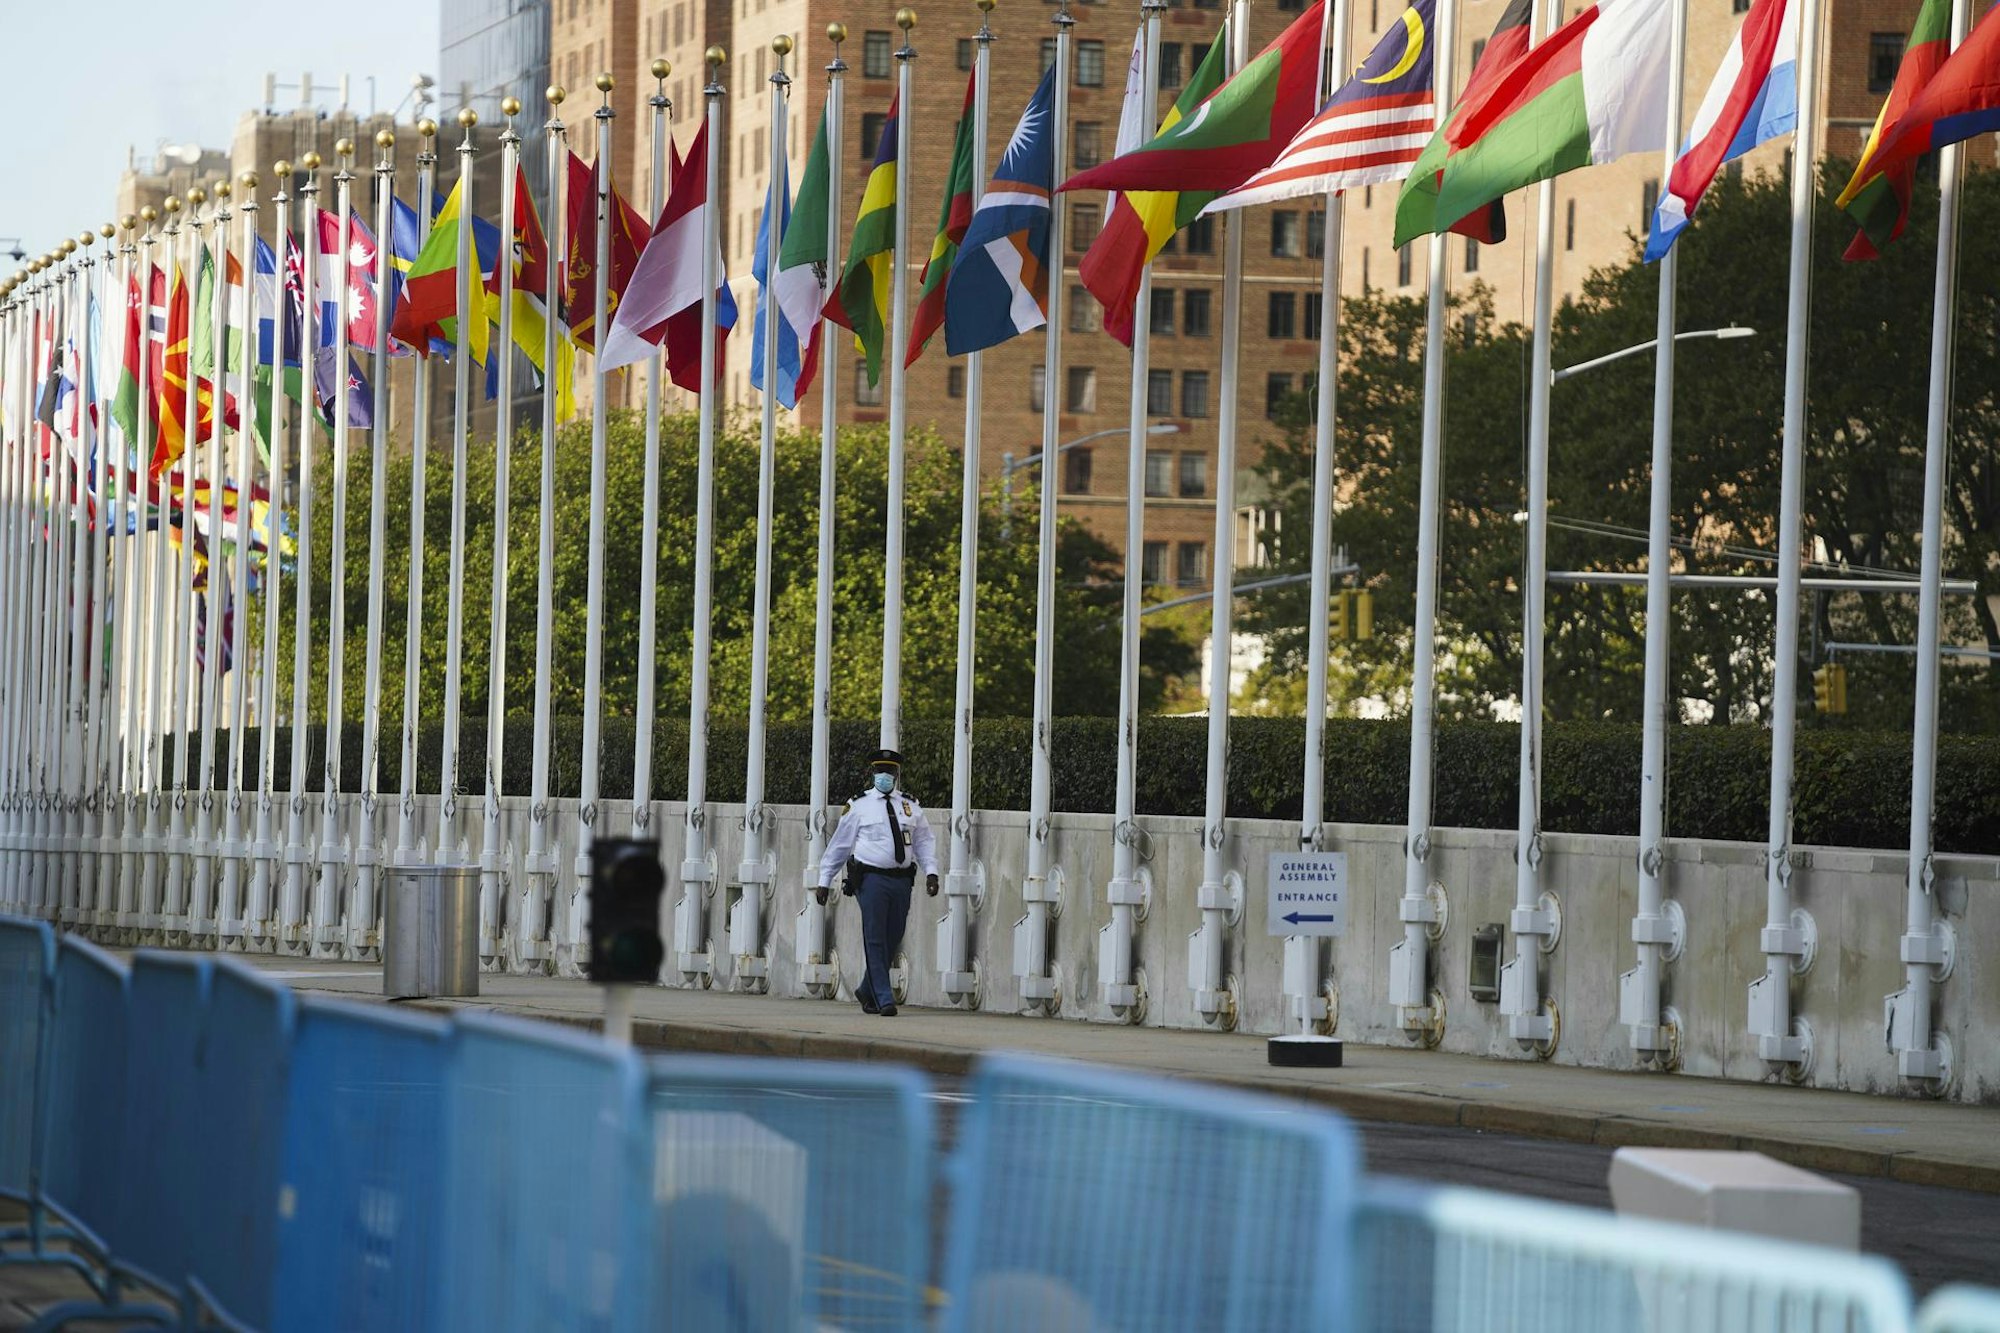 Nur die Fahnen der Nationen bewegen sich im Wind. Ansonsten herrscht rund um das UN-Gebäude in New York am Tag des 75-jährigen Geburtstags erschreckende Leere.